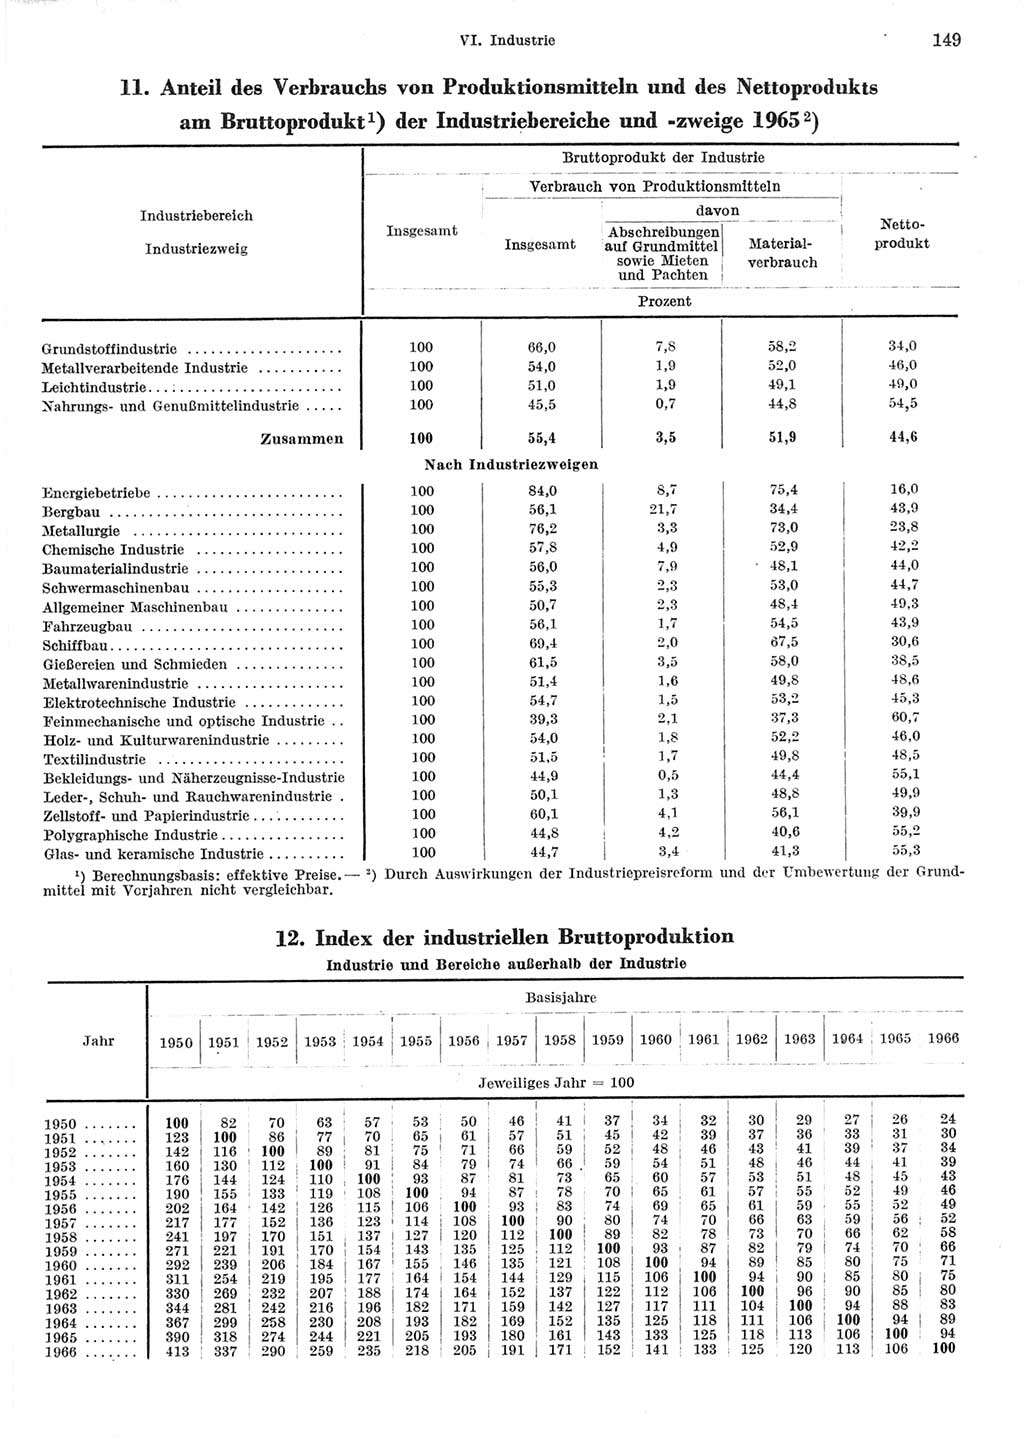 Statistisches Jahrbuch der Deutschen Demokratischen Republik (DDR) 1967, Seite 149 (Stat. Jb. DDR 1967, S. 149)